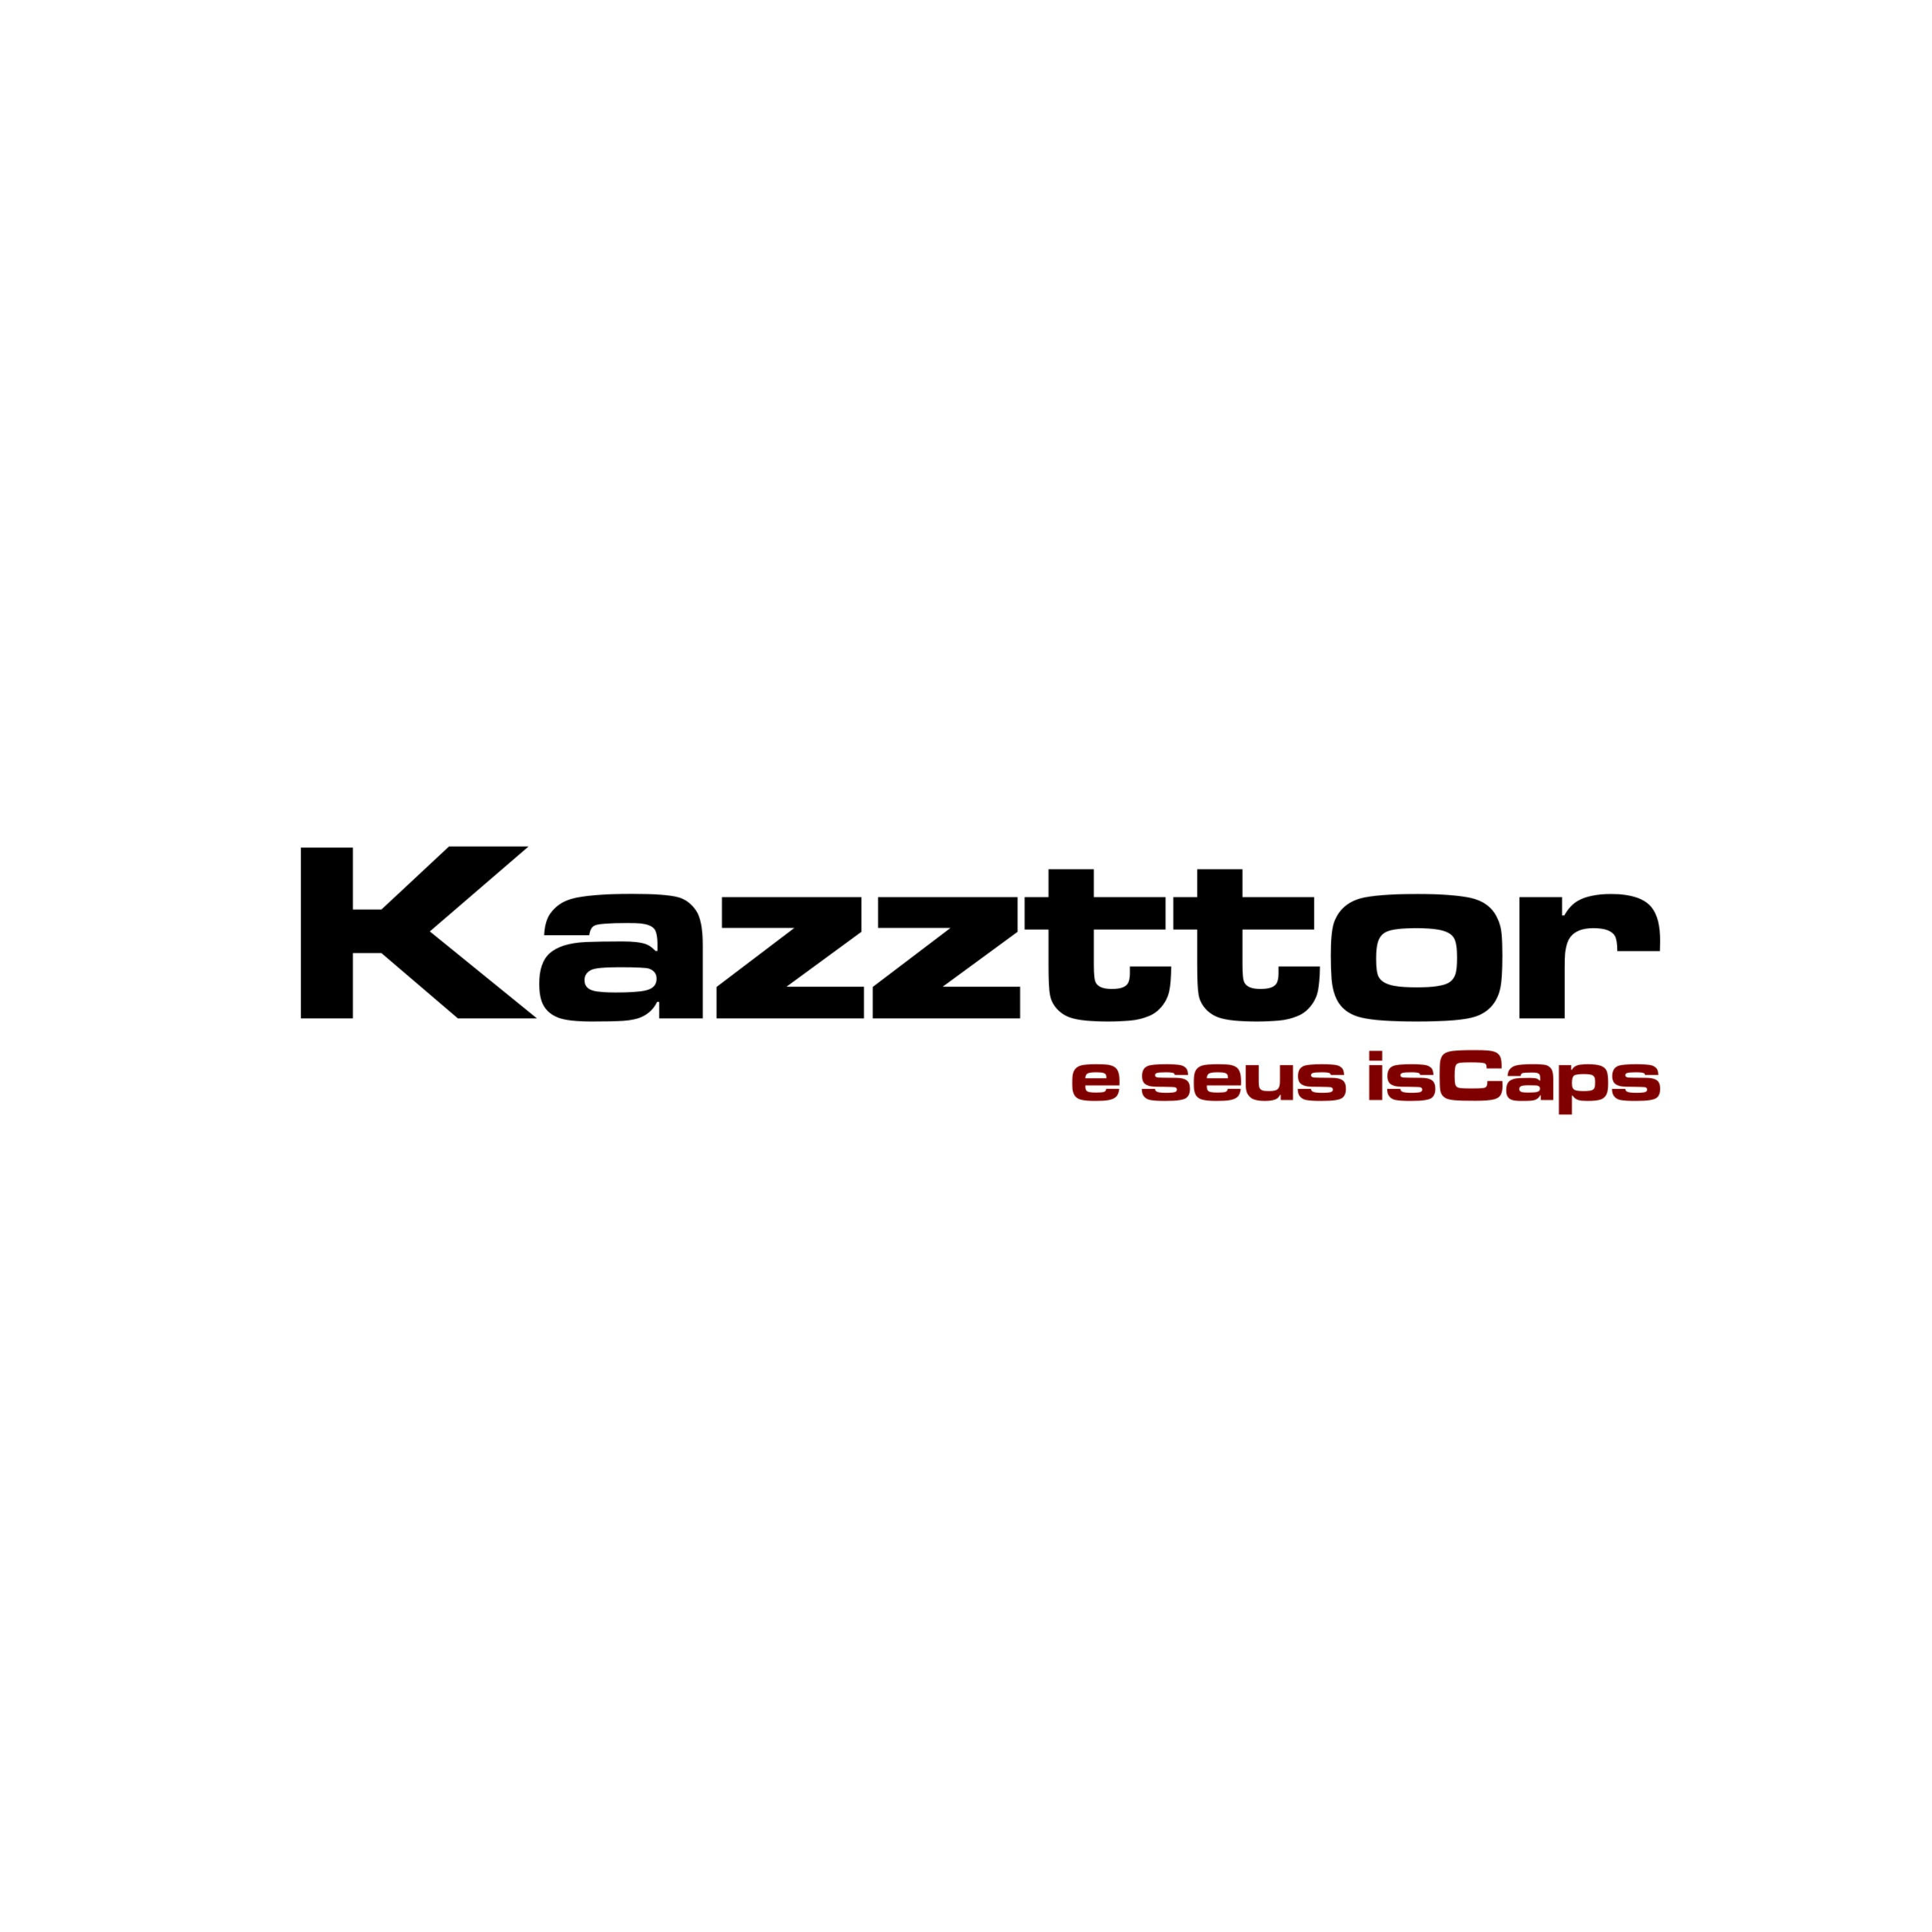 Kazzttor e Seus isCaps